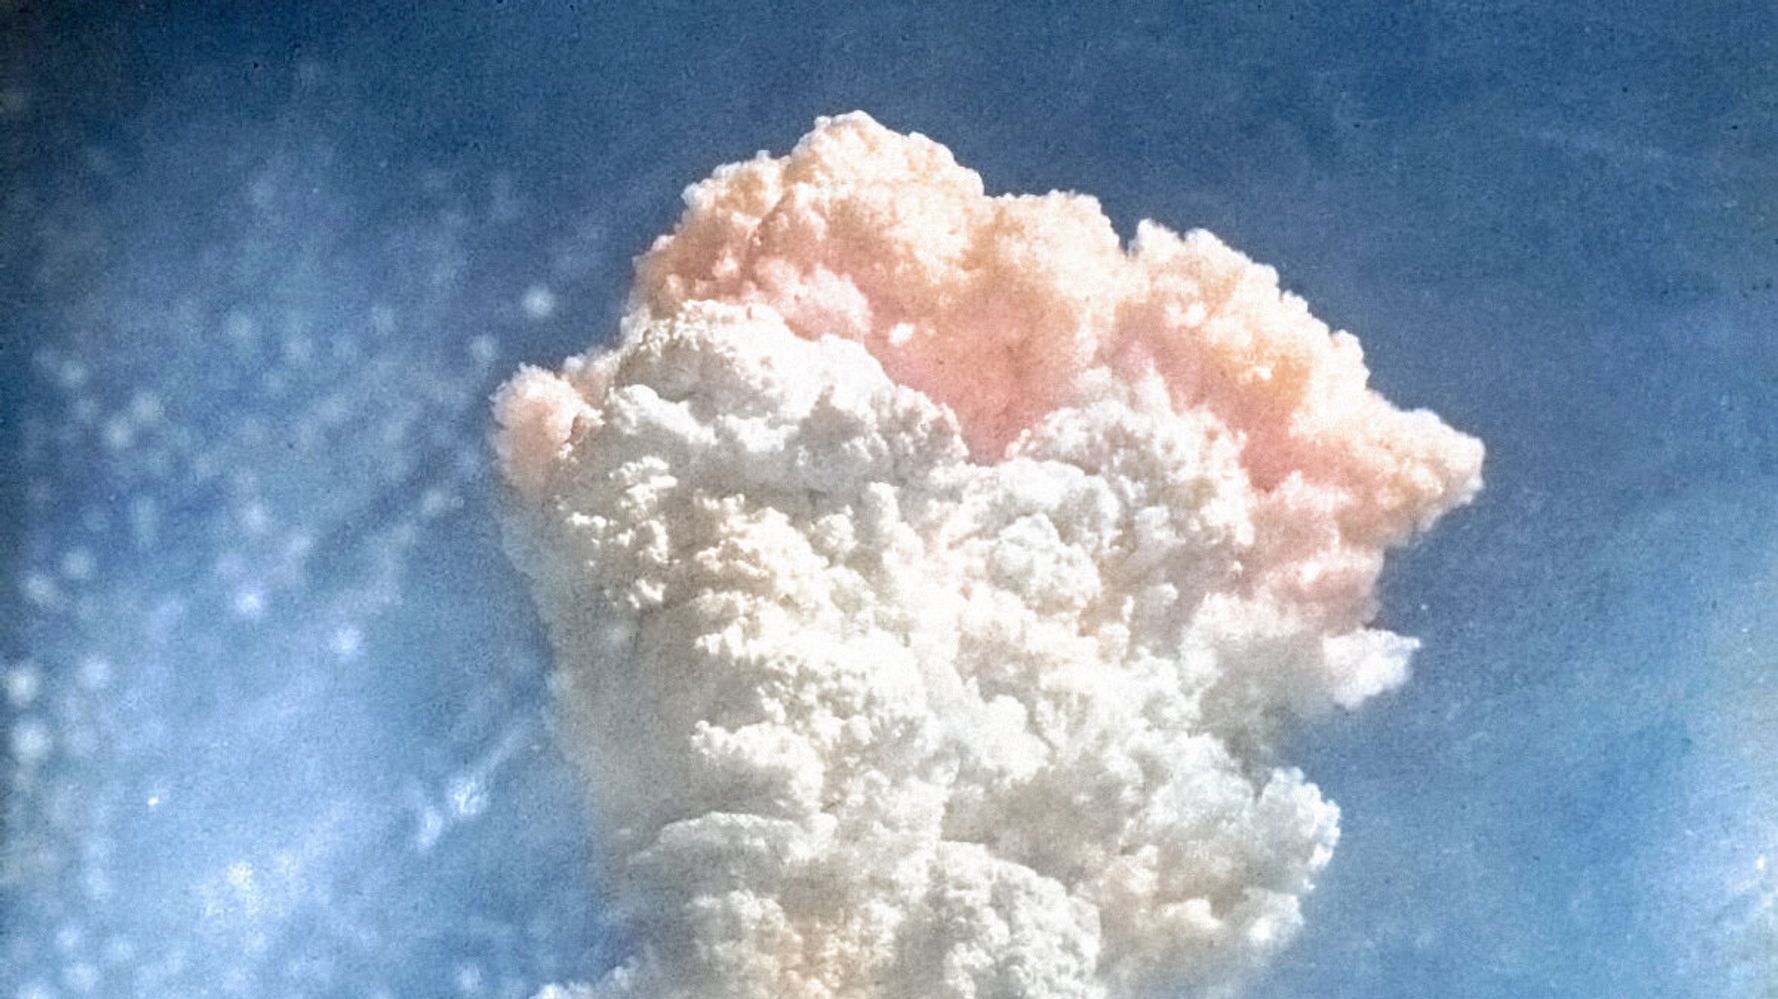 広島原爆投下から75年 Aiでカラー化された赤いキノコ雲の写真に胸が締め付けられる ハフポスト News